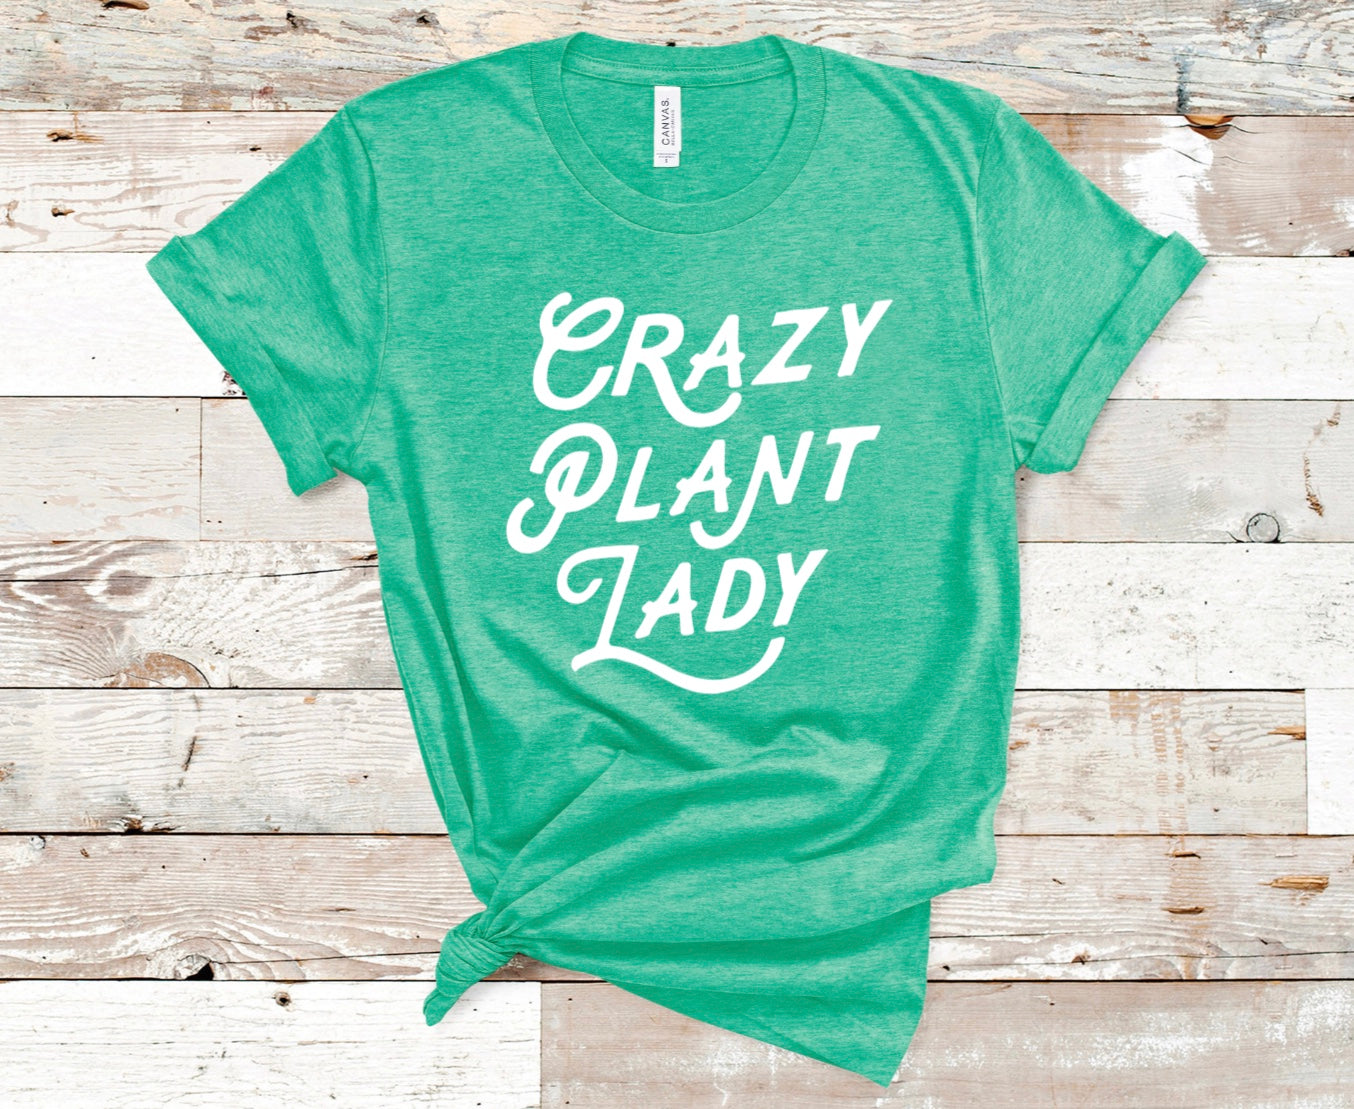 Crazy plant lady t-shirt 